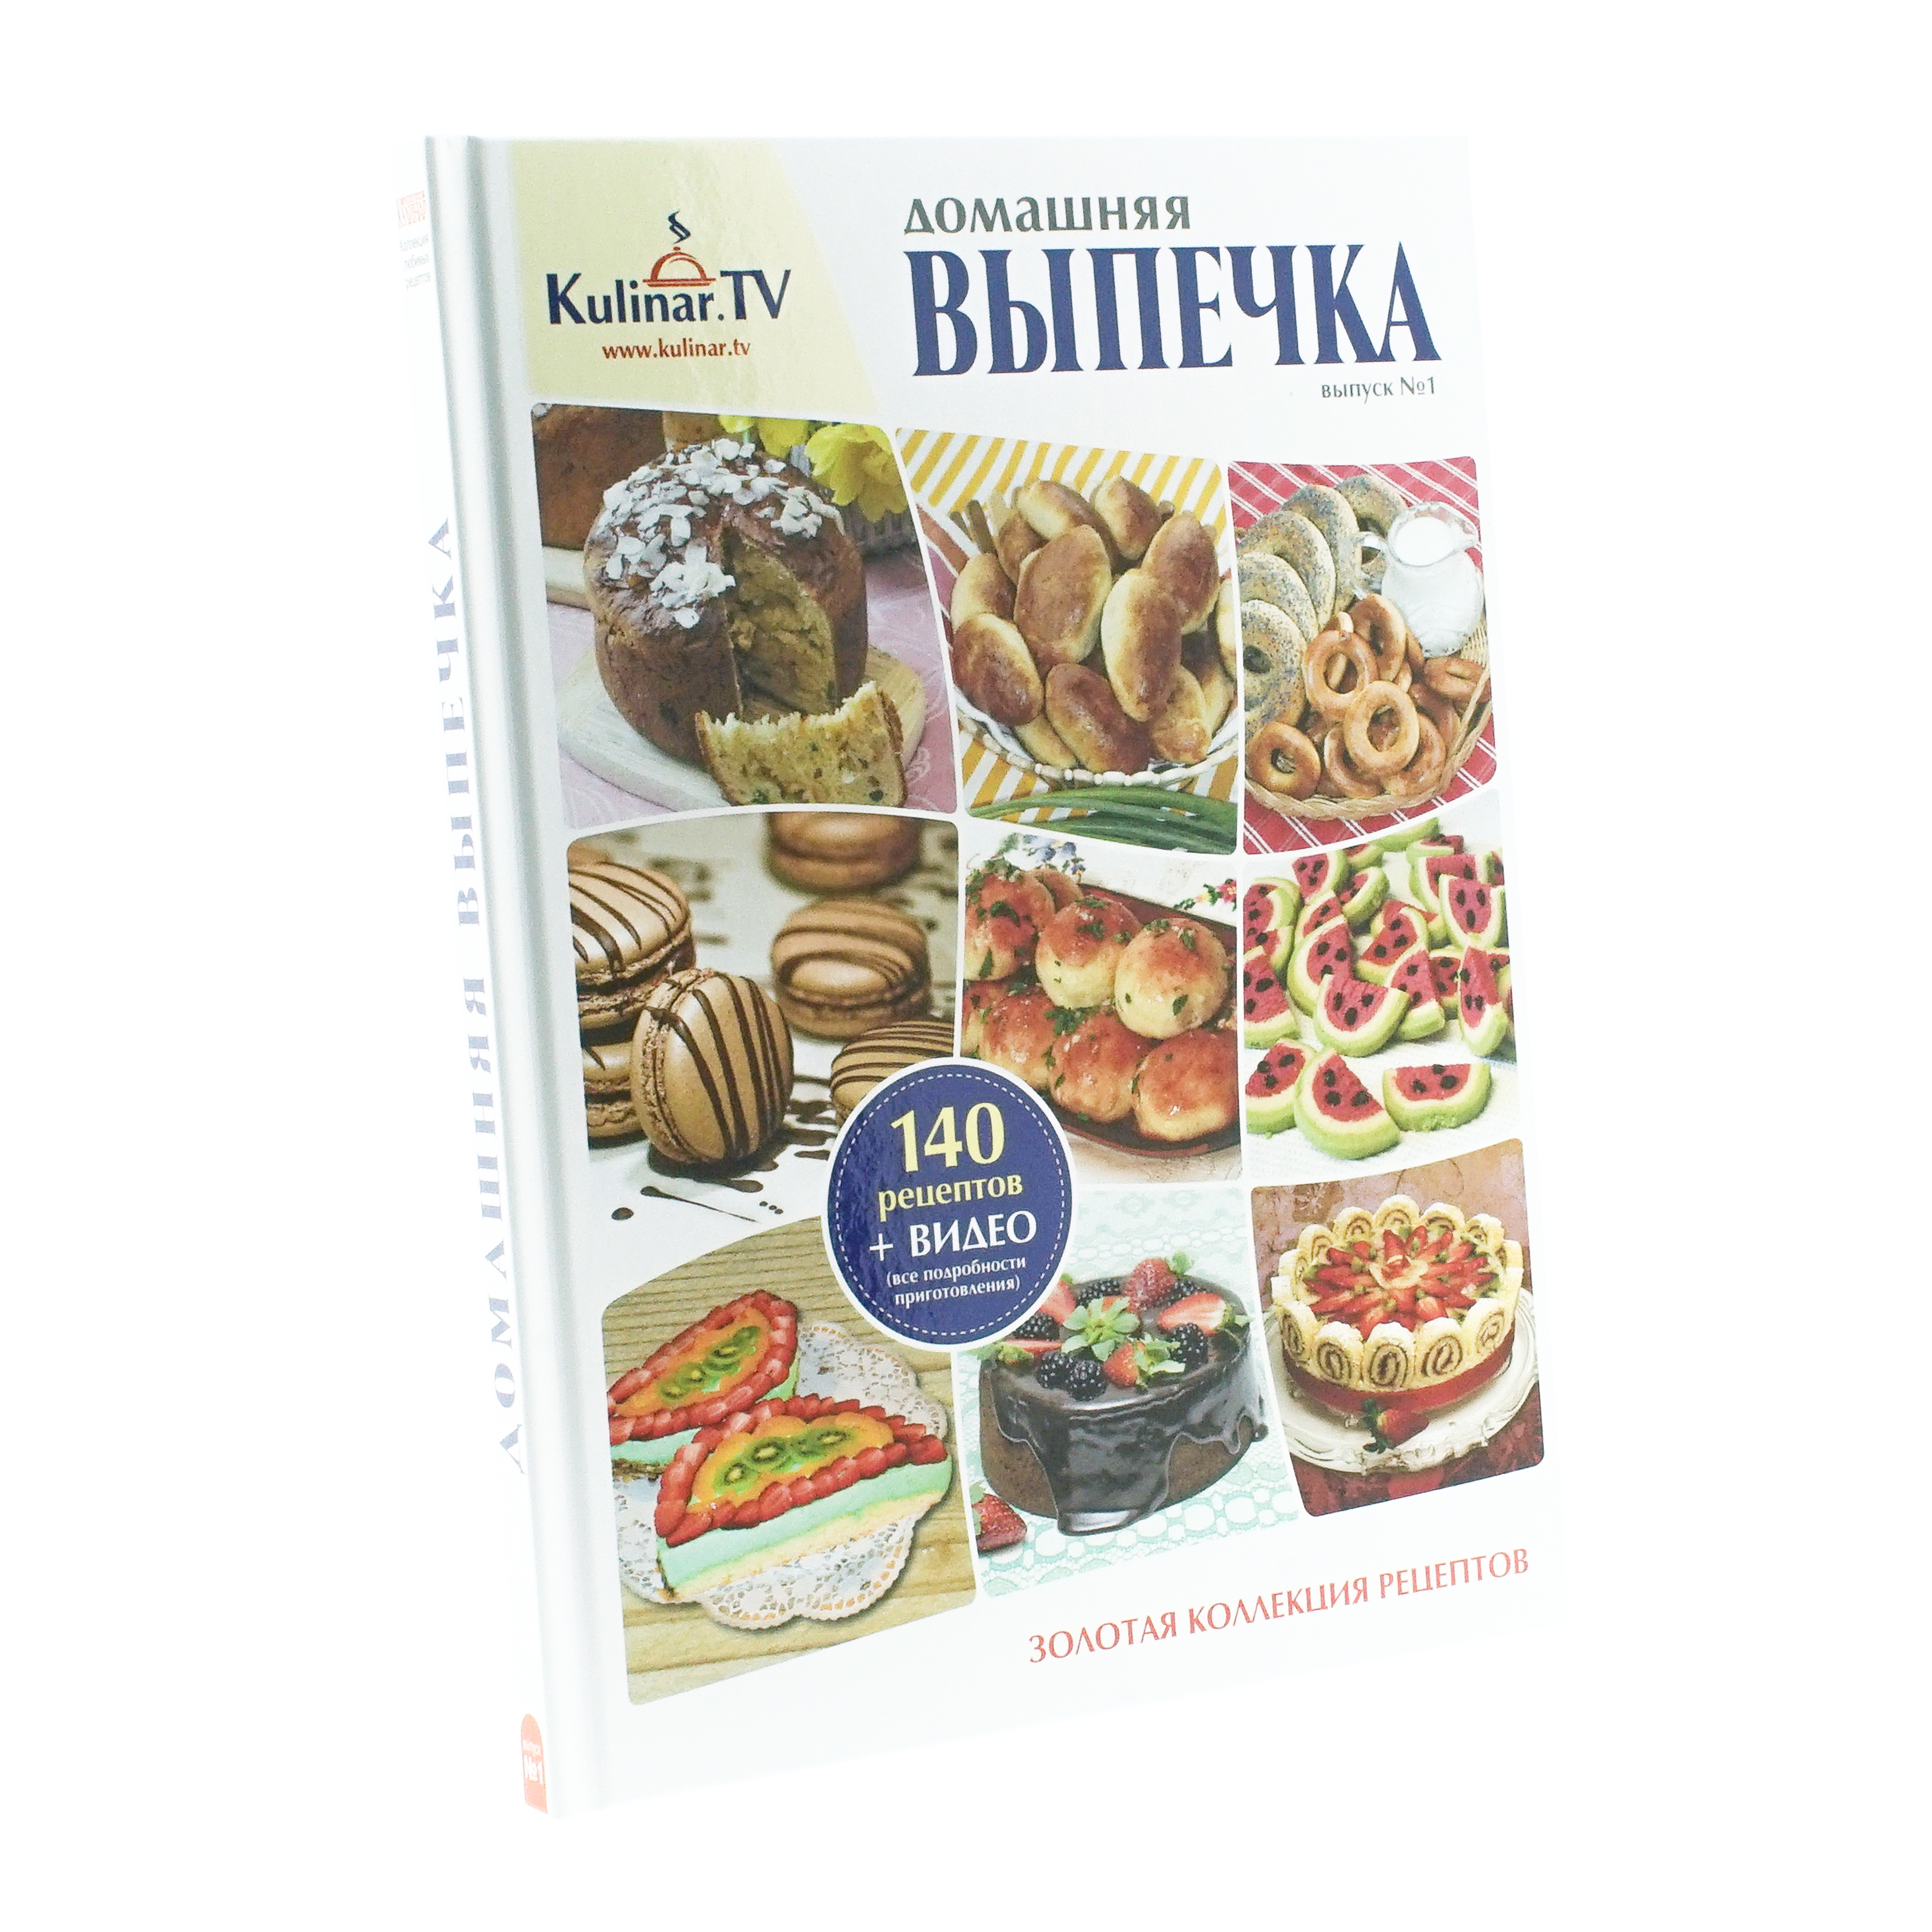 Kochbücher & Zeitschriften Kochbuch "Gebäck nach Hausart" von KulinarTV